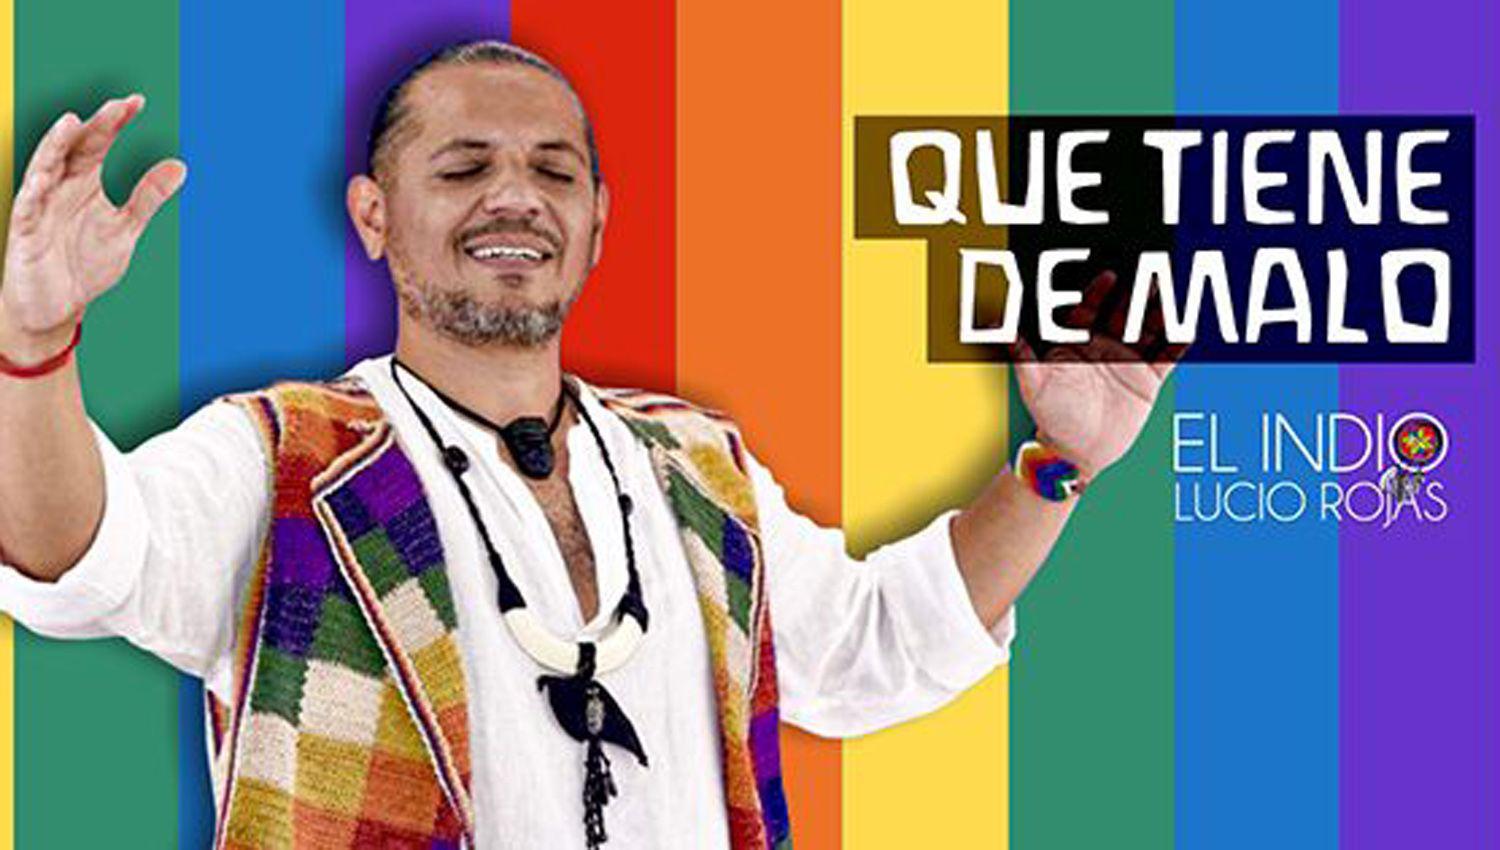 El ldquoIndiordquo Lucio Rojas presenta ldquoQue tiene de malo esordquo un himno a la diversidad sexual y cultural